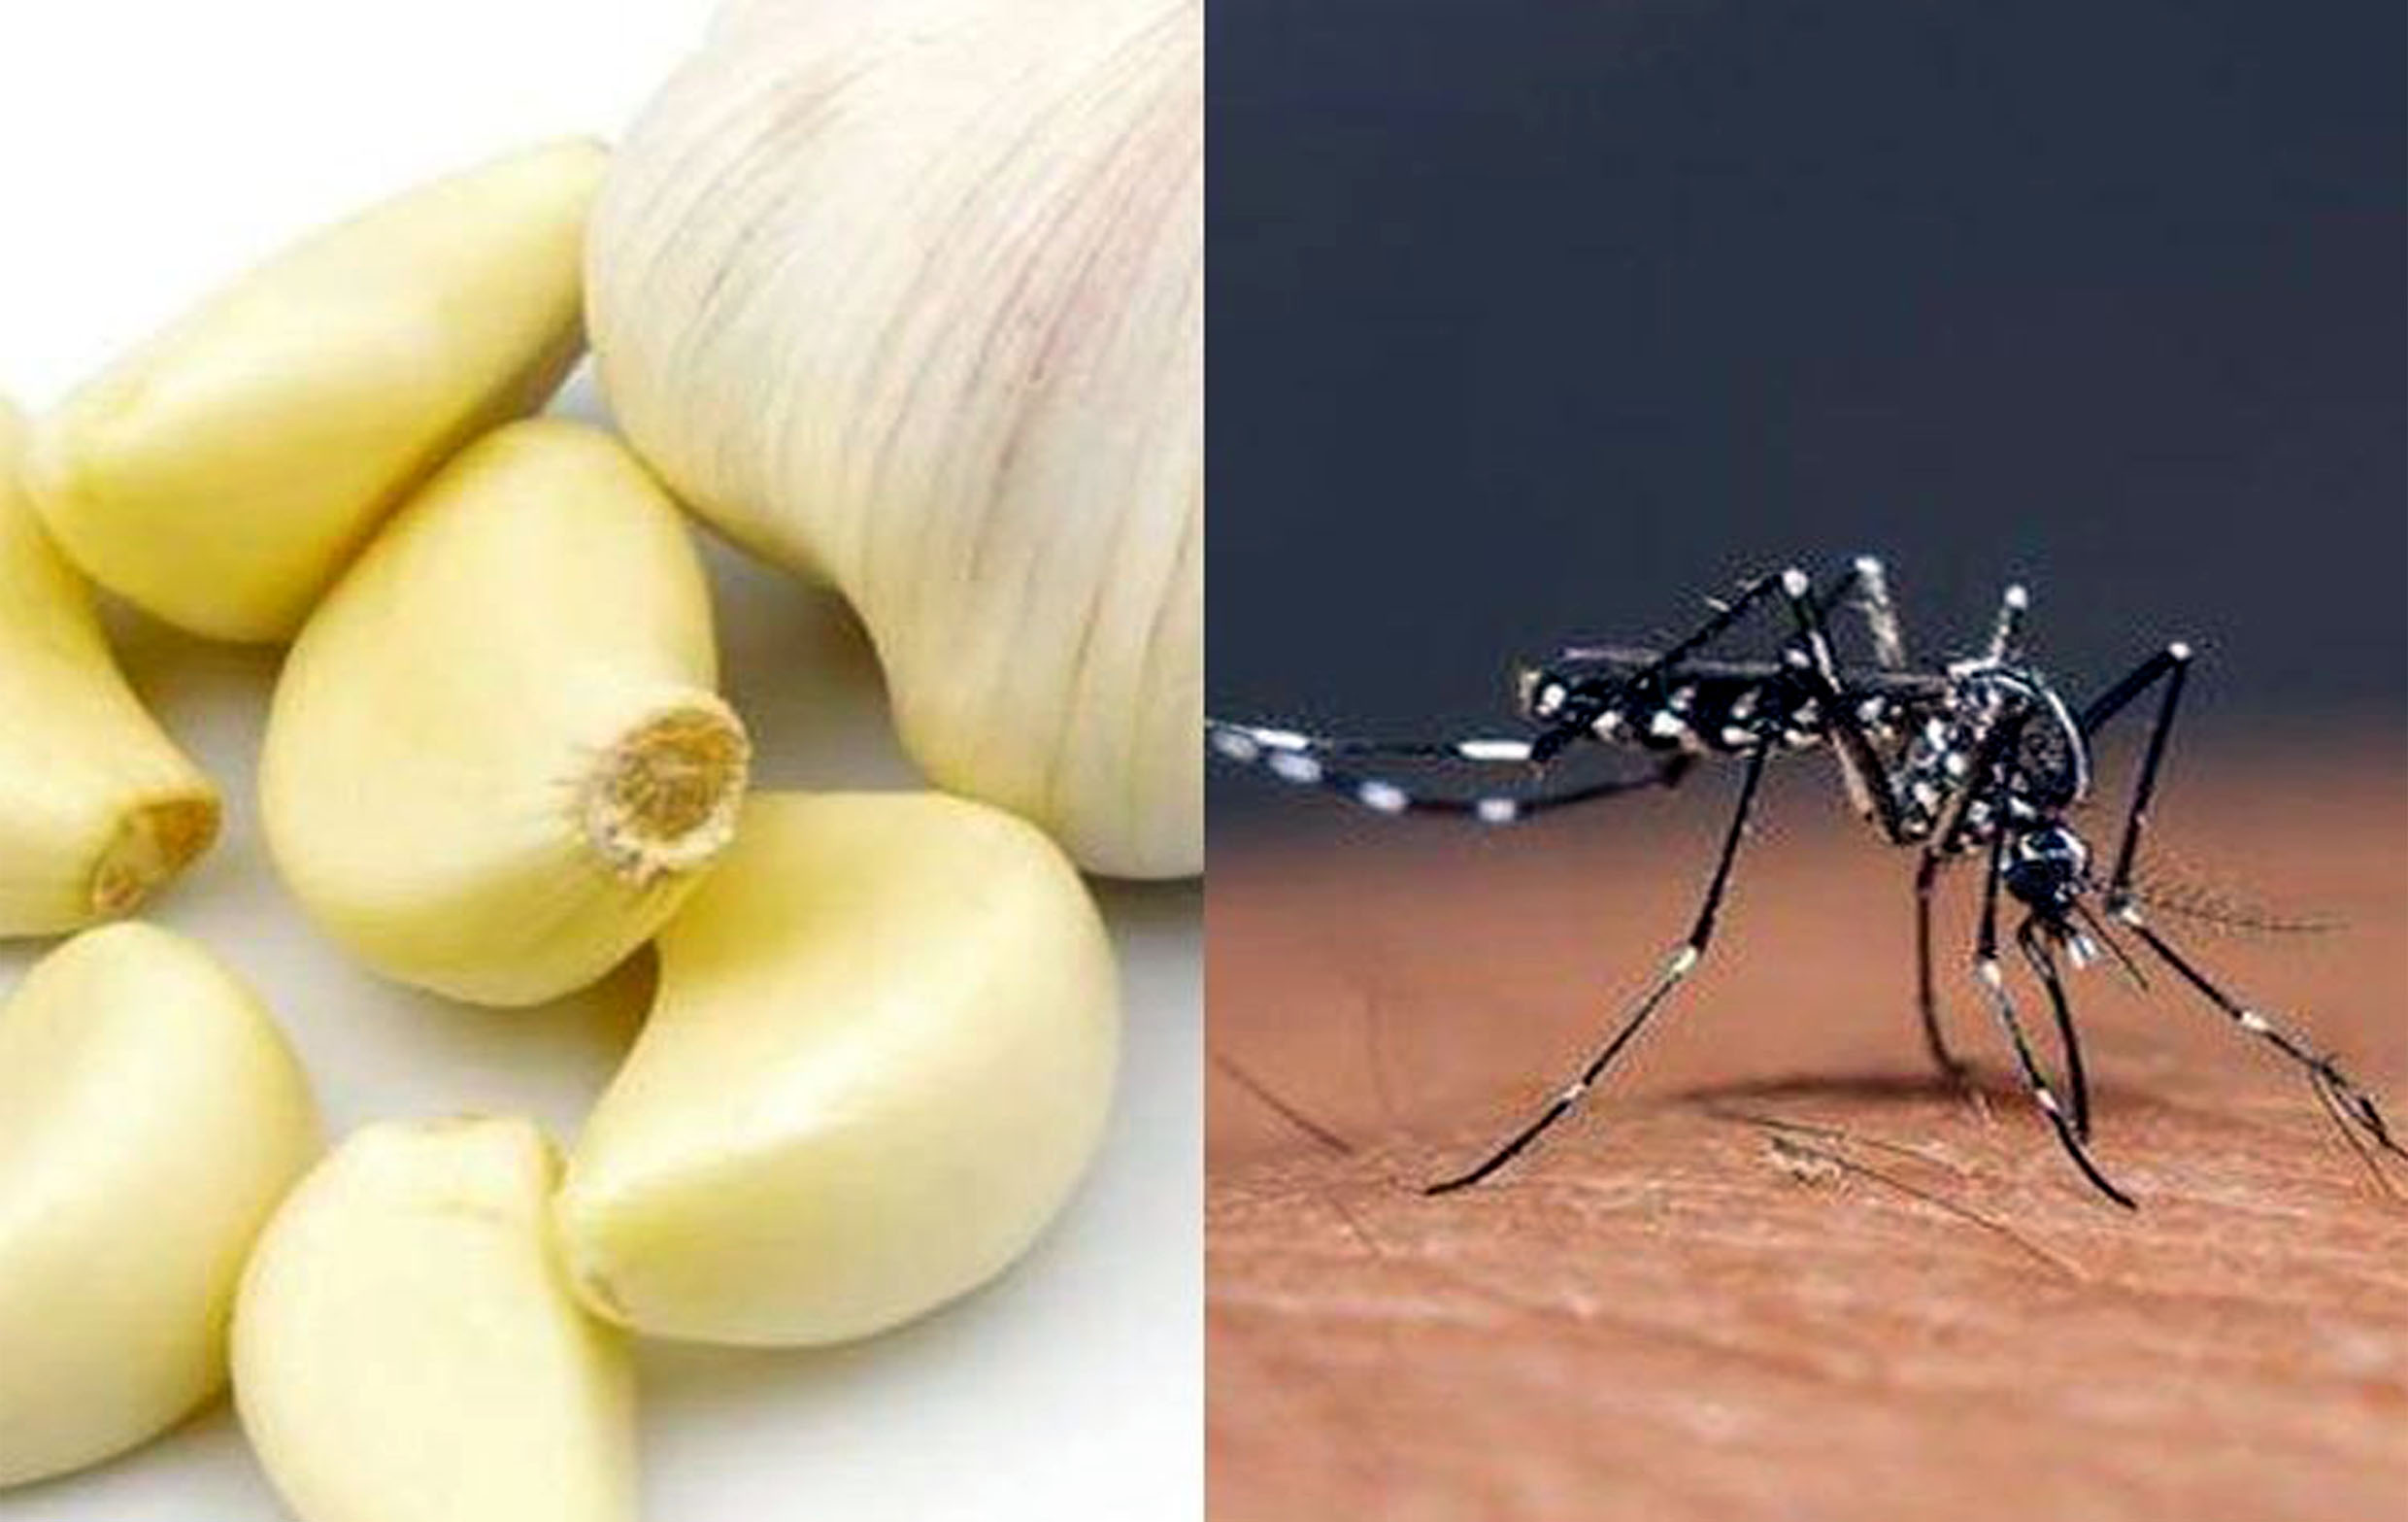 Obat Nyamuk Bebas Asap! Hanya Dengan 2 Bahan Dapur Ini Nyamuk Dijamin Kabur